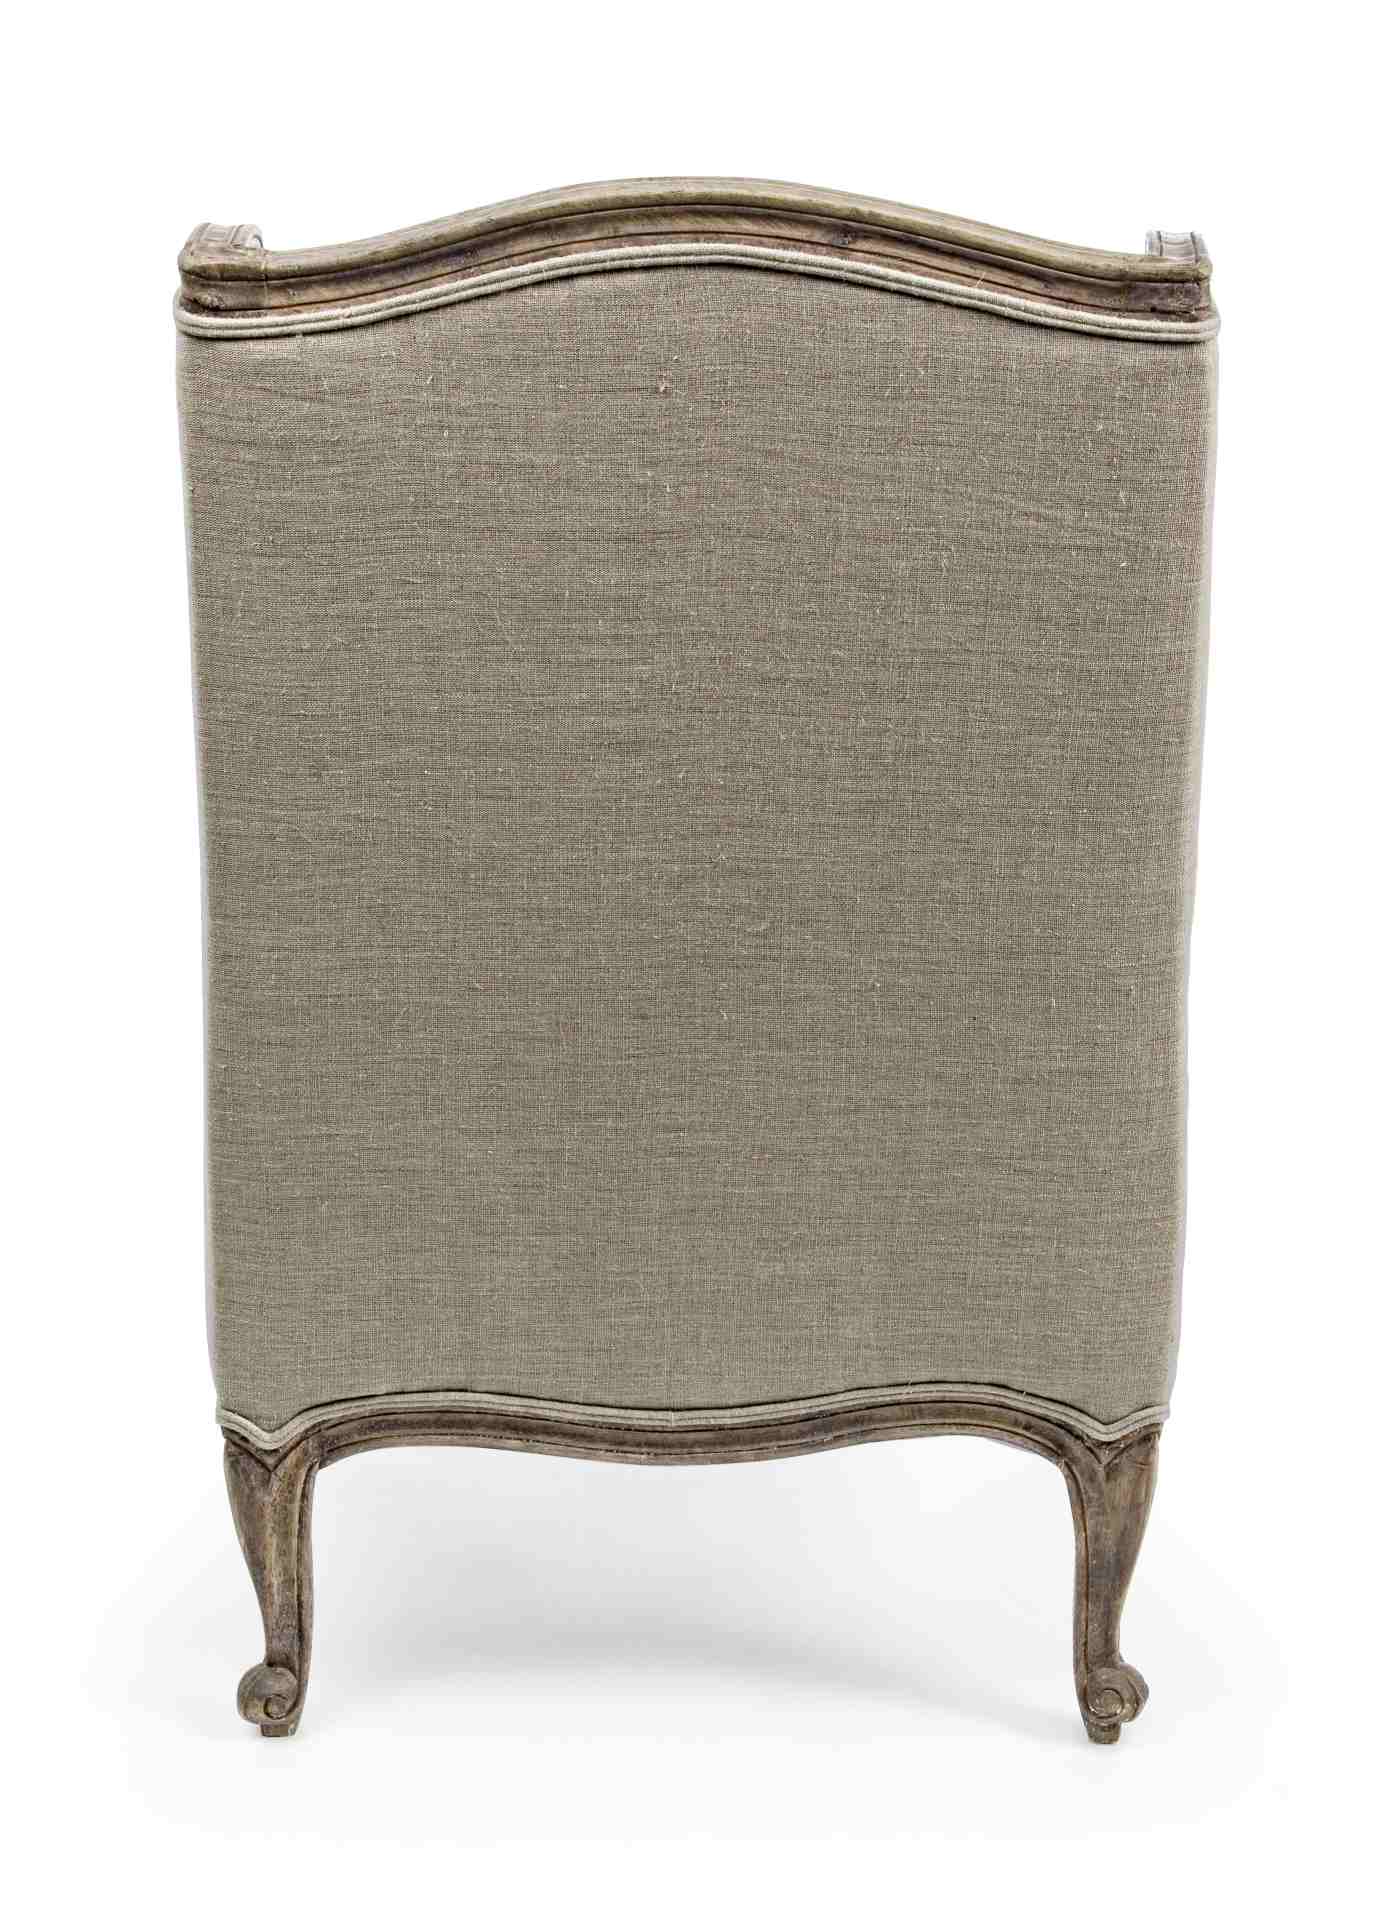 Der Sessel Catherine überzeugt mit seinem klassischen Design. Gefertigt wurde er aus Stoff, welcher einen beige Farbton besitzt. Das Gestell ist aus Mangoholz und hat eine natürliche Farbe. Der Sessel besitzt eine Sitzhöhe von 50 cm. Die Breite beträgt 70